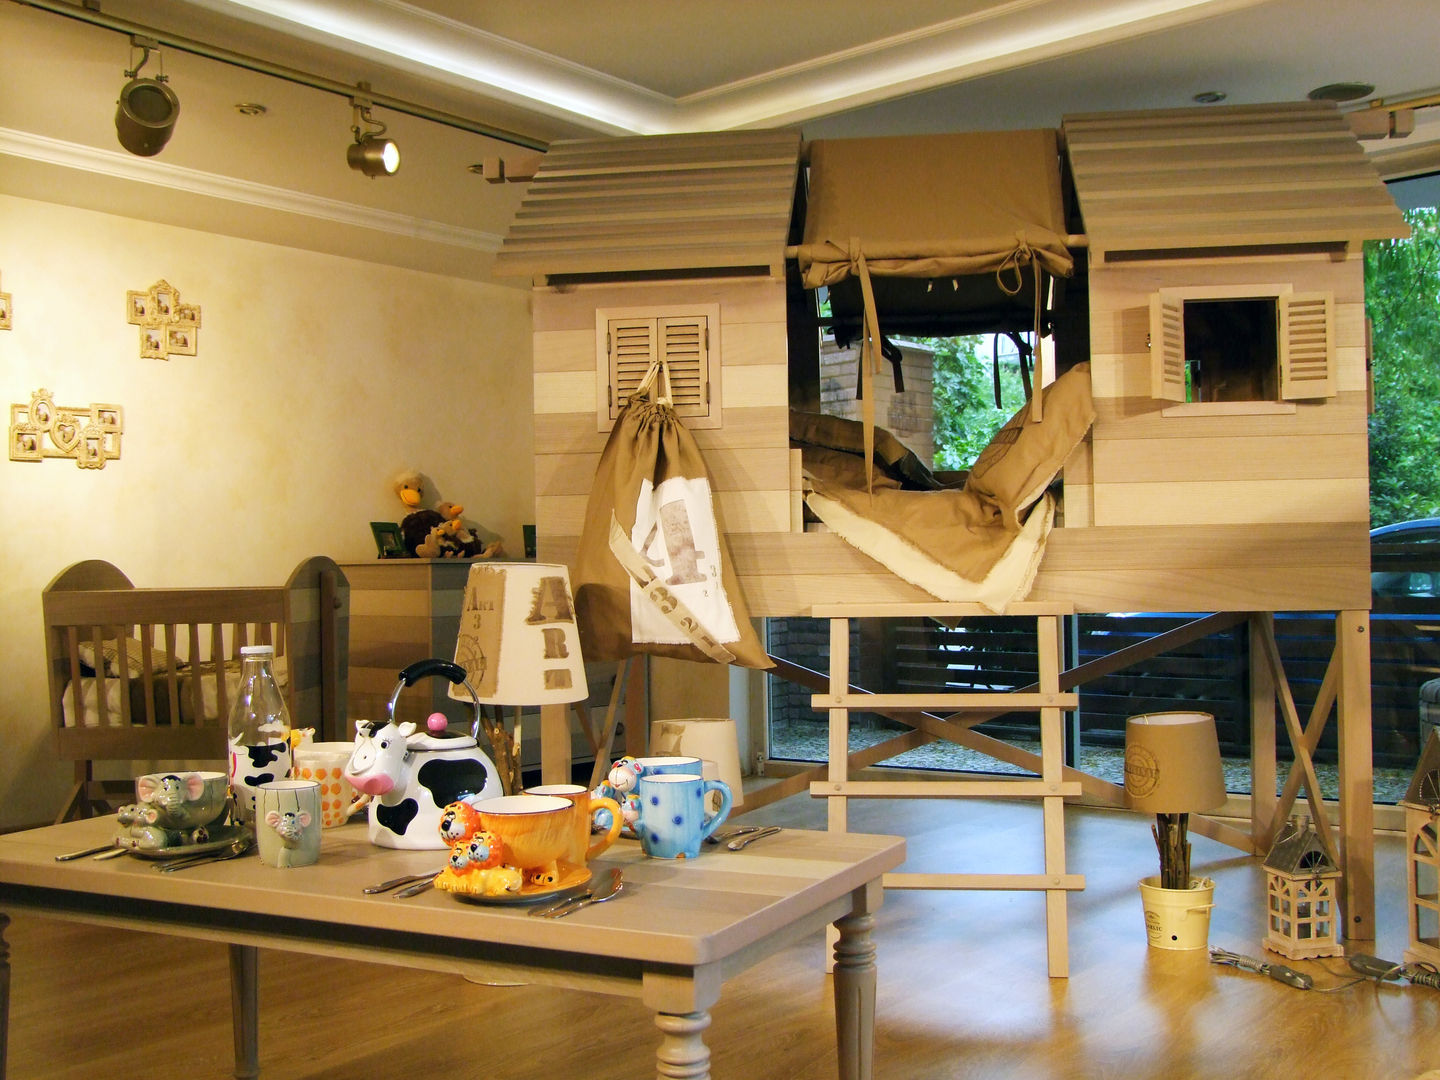 LACOTE Çiftlik temalı bebek ve çocuk odası , Lacote Design Lacote Design Nursery/kid’s room Beds & cribs